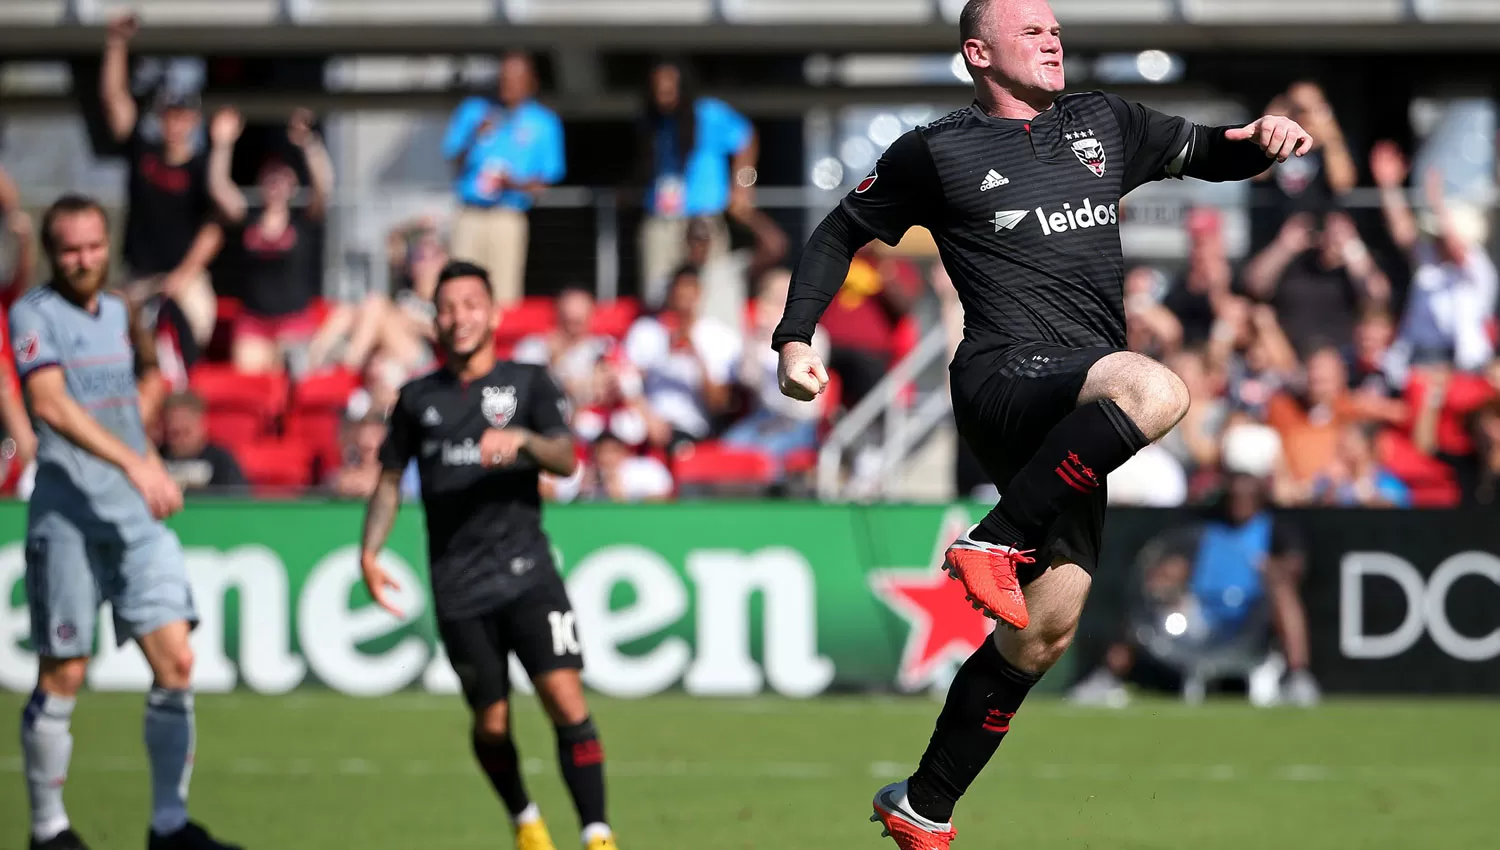 EN LA MLS. Antes de regresar a Inglaterra, Rooney tuvo un paso por DC United.